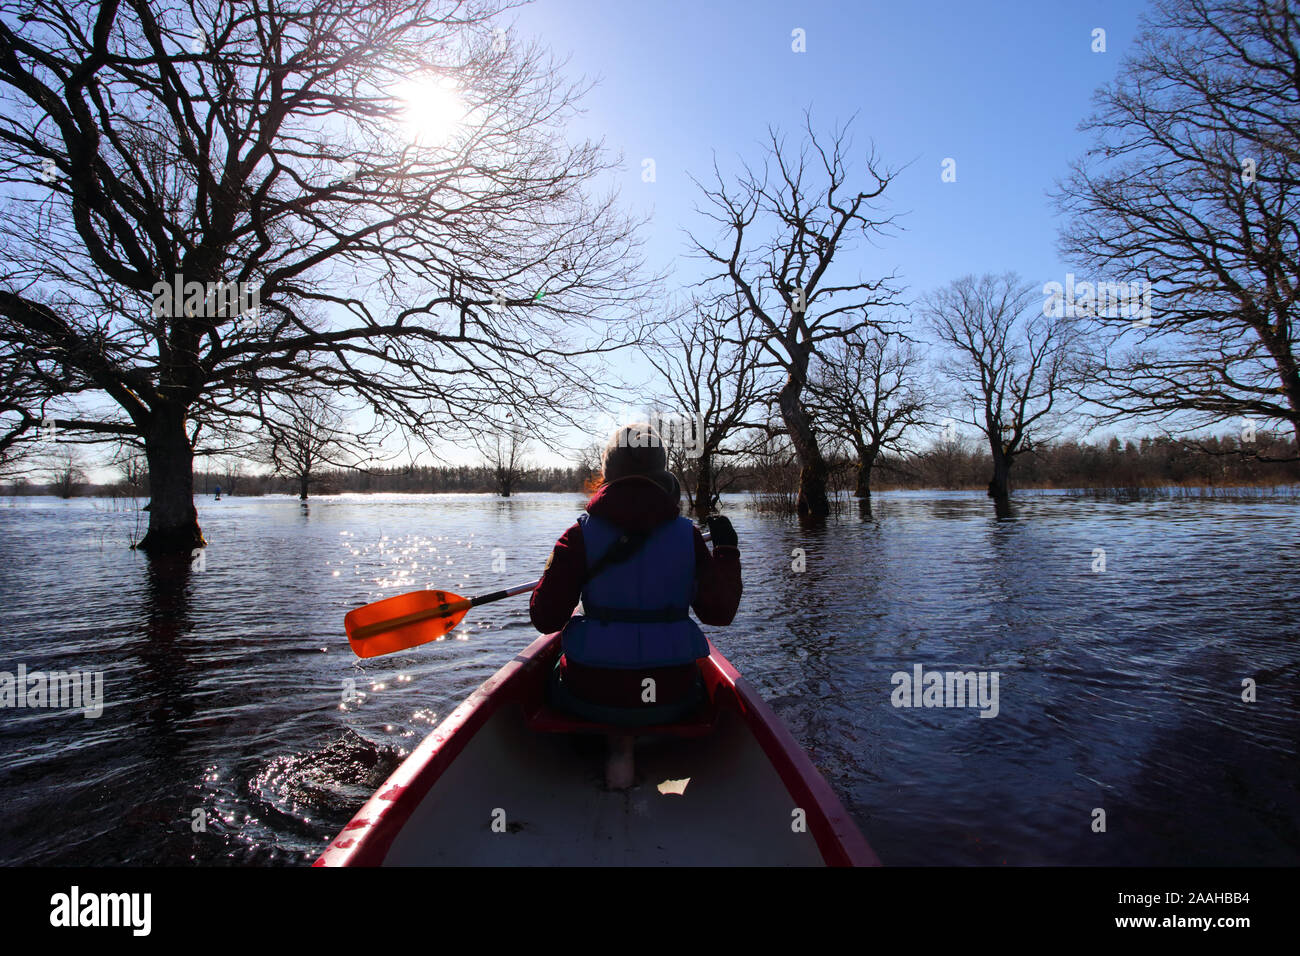 Cinquième saison canot à Rio Dulce, woman on canoe avec palettes de navigation dans les forêts, l'Estonie au printemps Banque D'Images